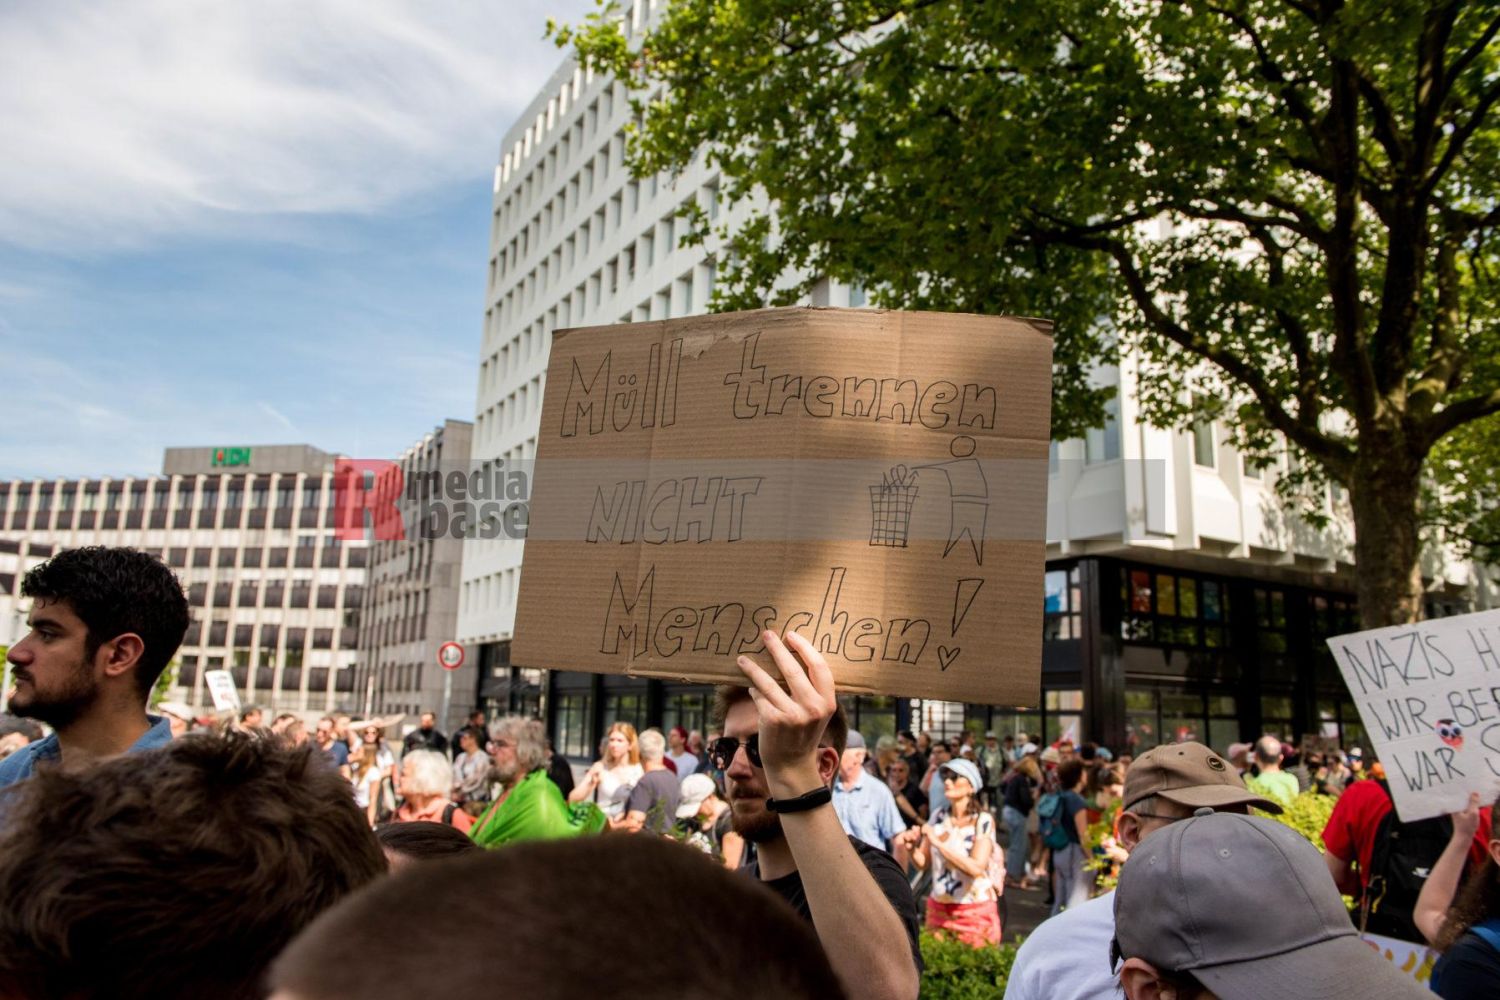 Laut - Bunt - Entschlossen! Protest gegen den Bundesparteitag der AfD in Essen <i>Bild Christian Schneider/R-mediabase</i> <br><a href=/confor2/?bld=83072&pst=82663&aid=615&dc=1324&i1=Christian%20Schneider/R-mediabase><strong>Downloadanfrage</strong></a>  